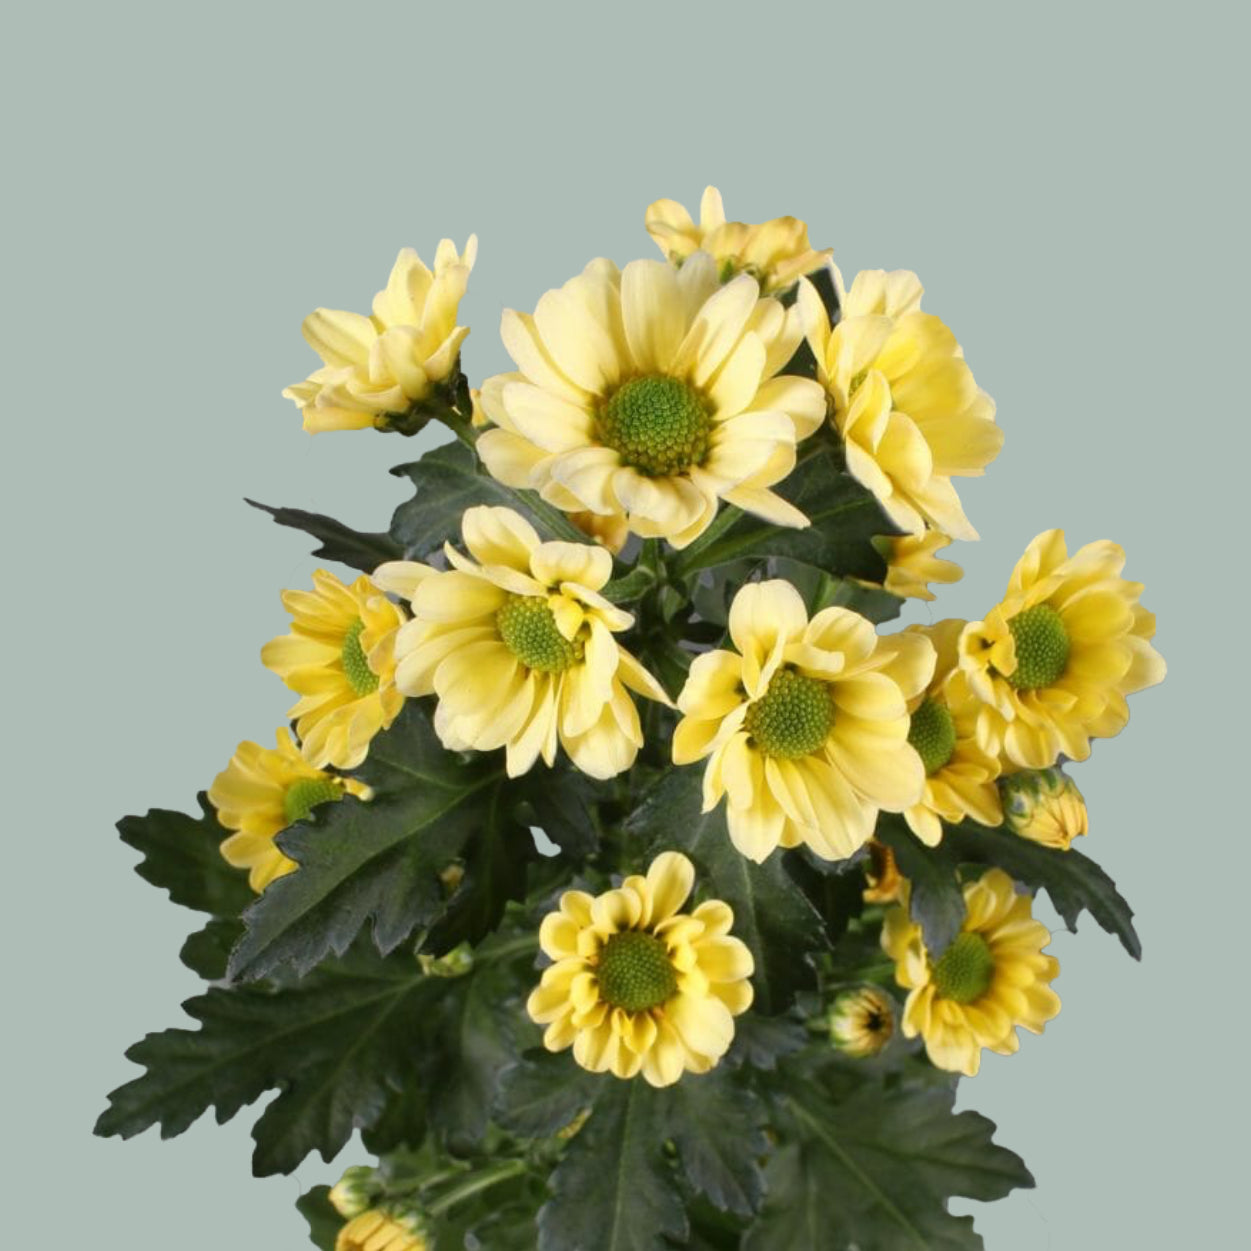 Chrysanthemum Santini Rossi Cream (25 Stems)